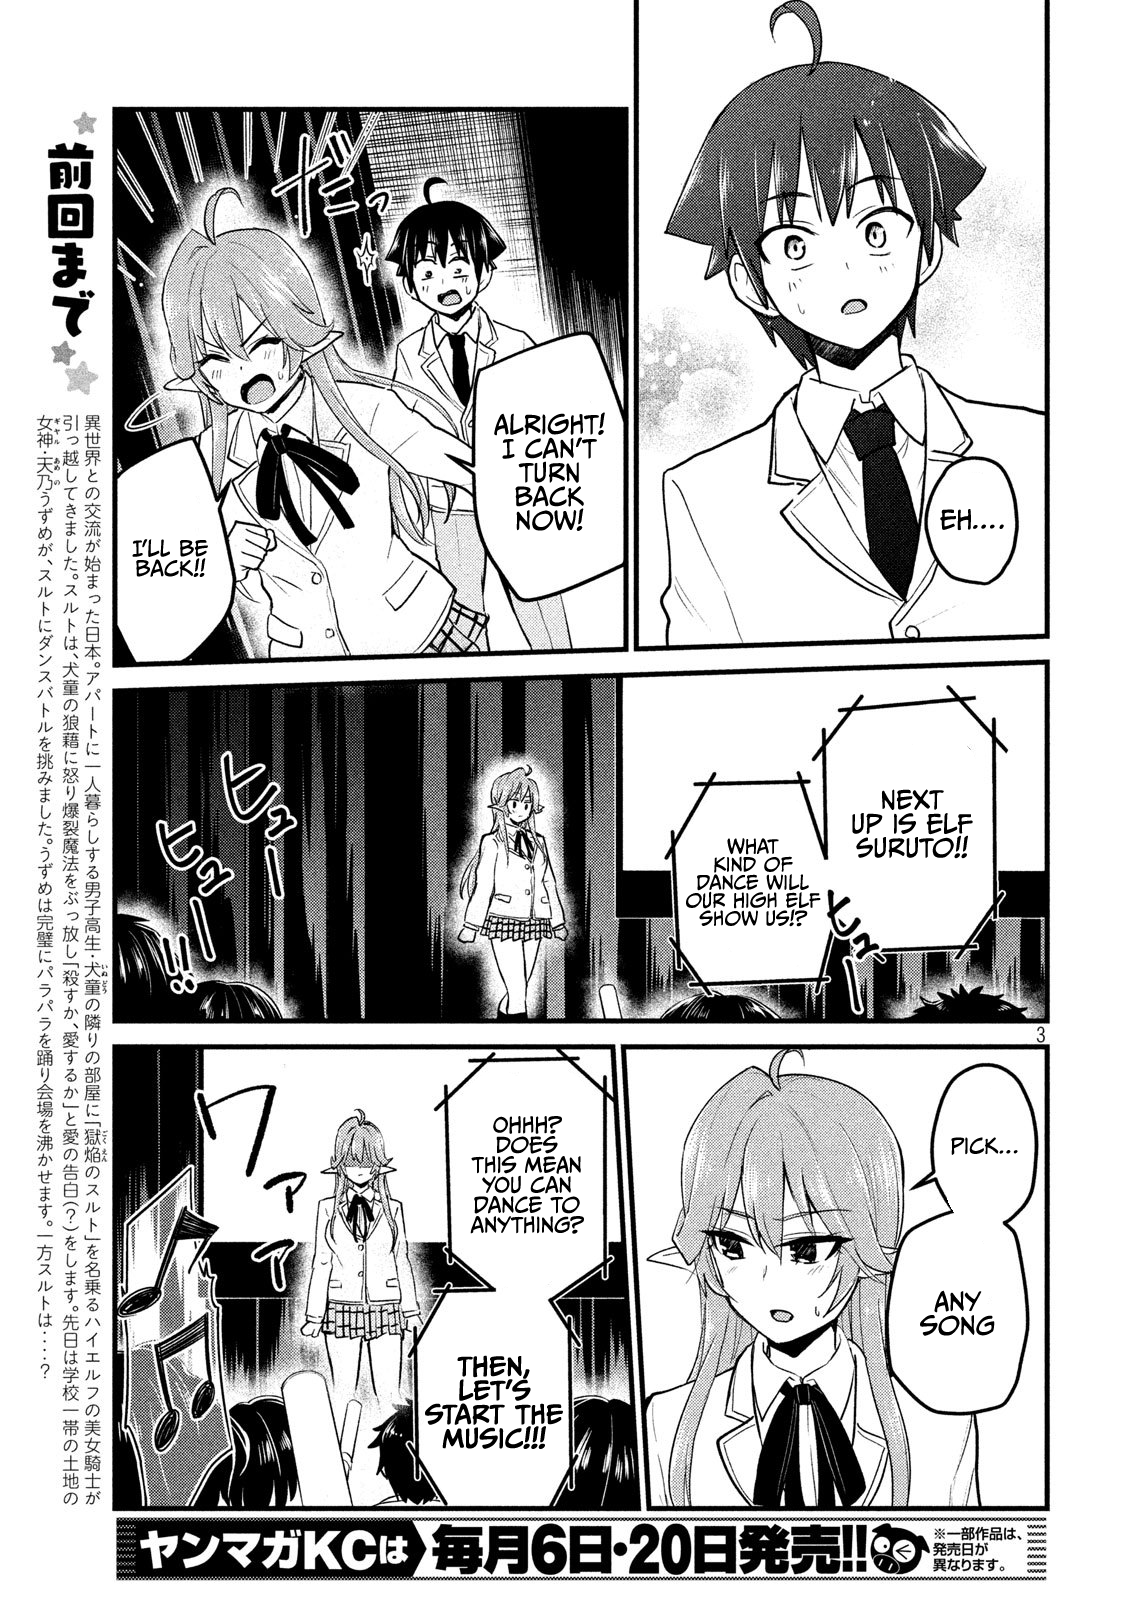 Otaku No Tonari Wa Erufu Desuka? - 10 page 3